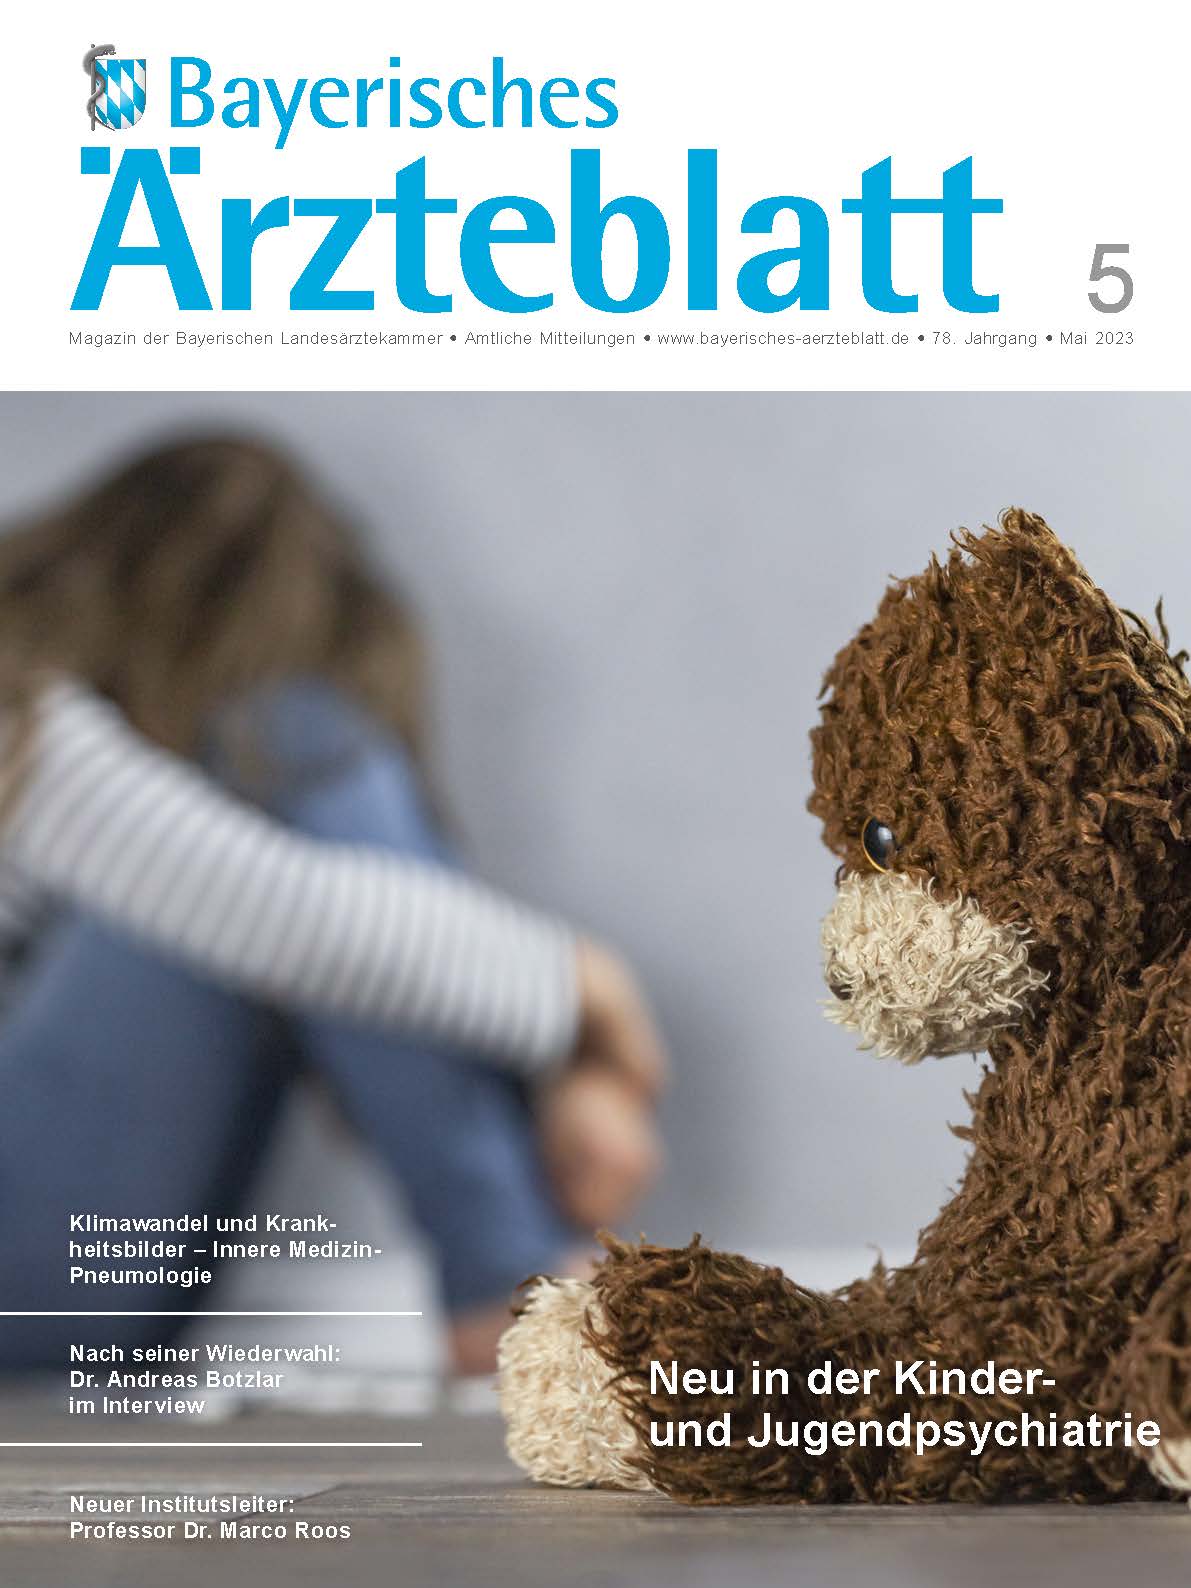 Neue Ausgabe des Bayerischen Ärzteblatts ist erschienen